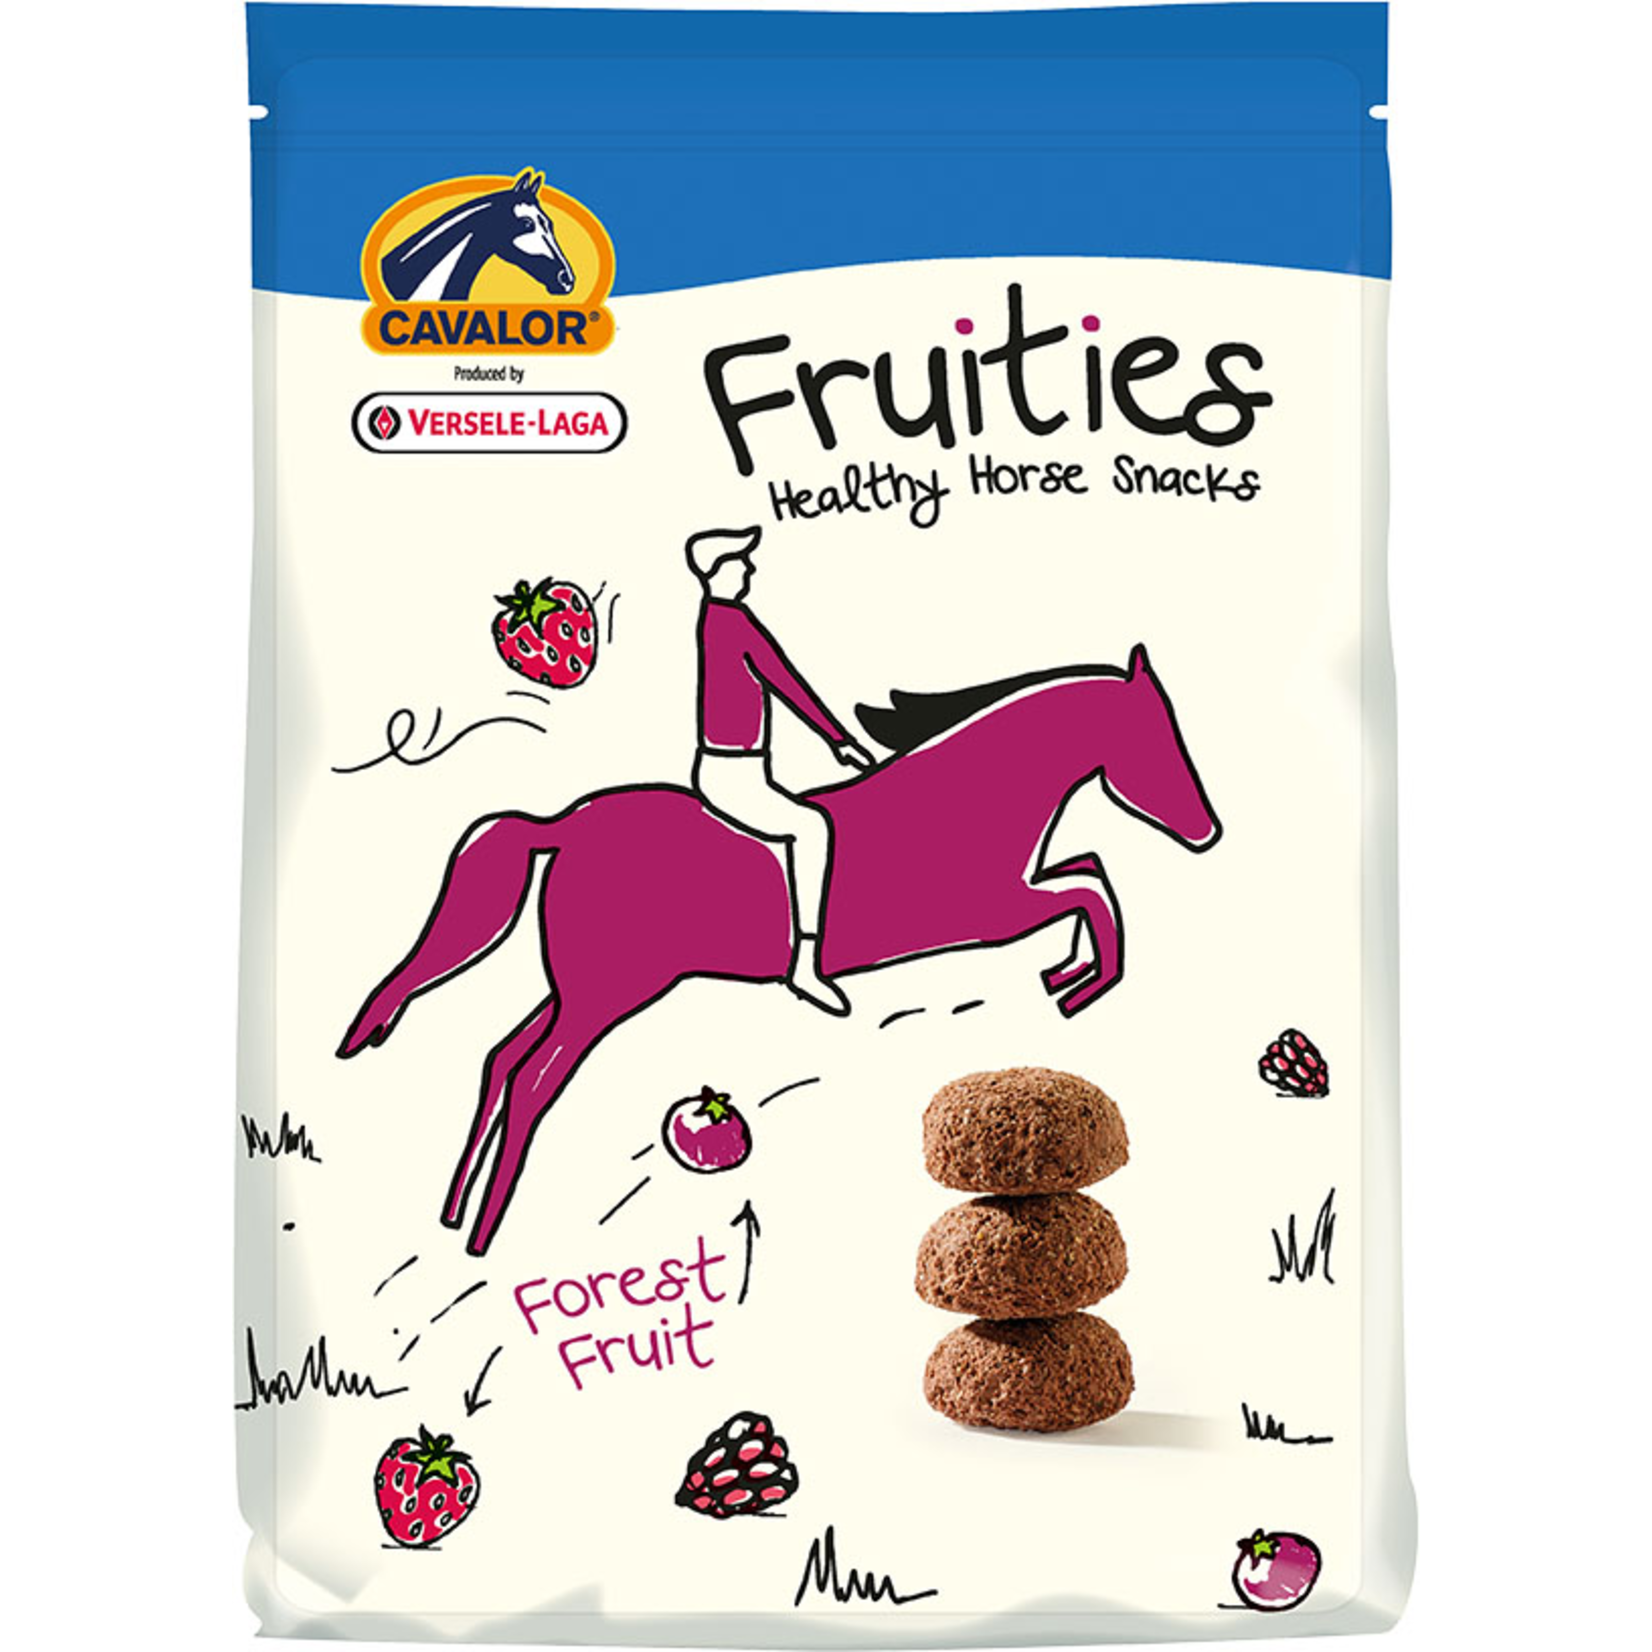 Cavalor Cavalor Healthy Horse Snacks